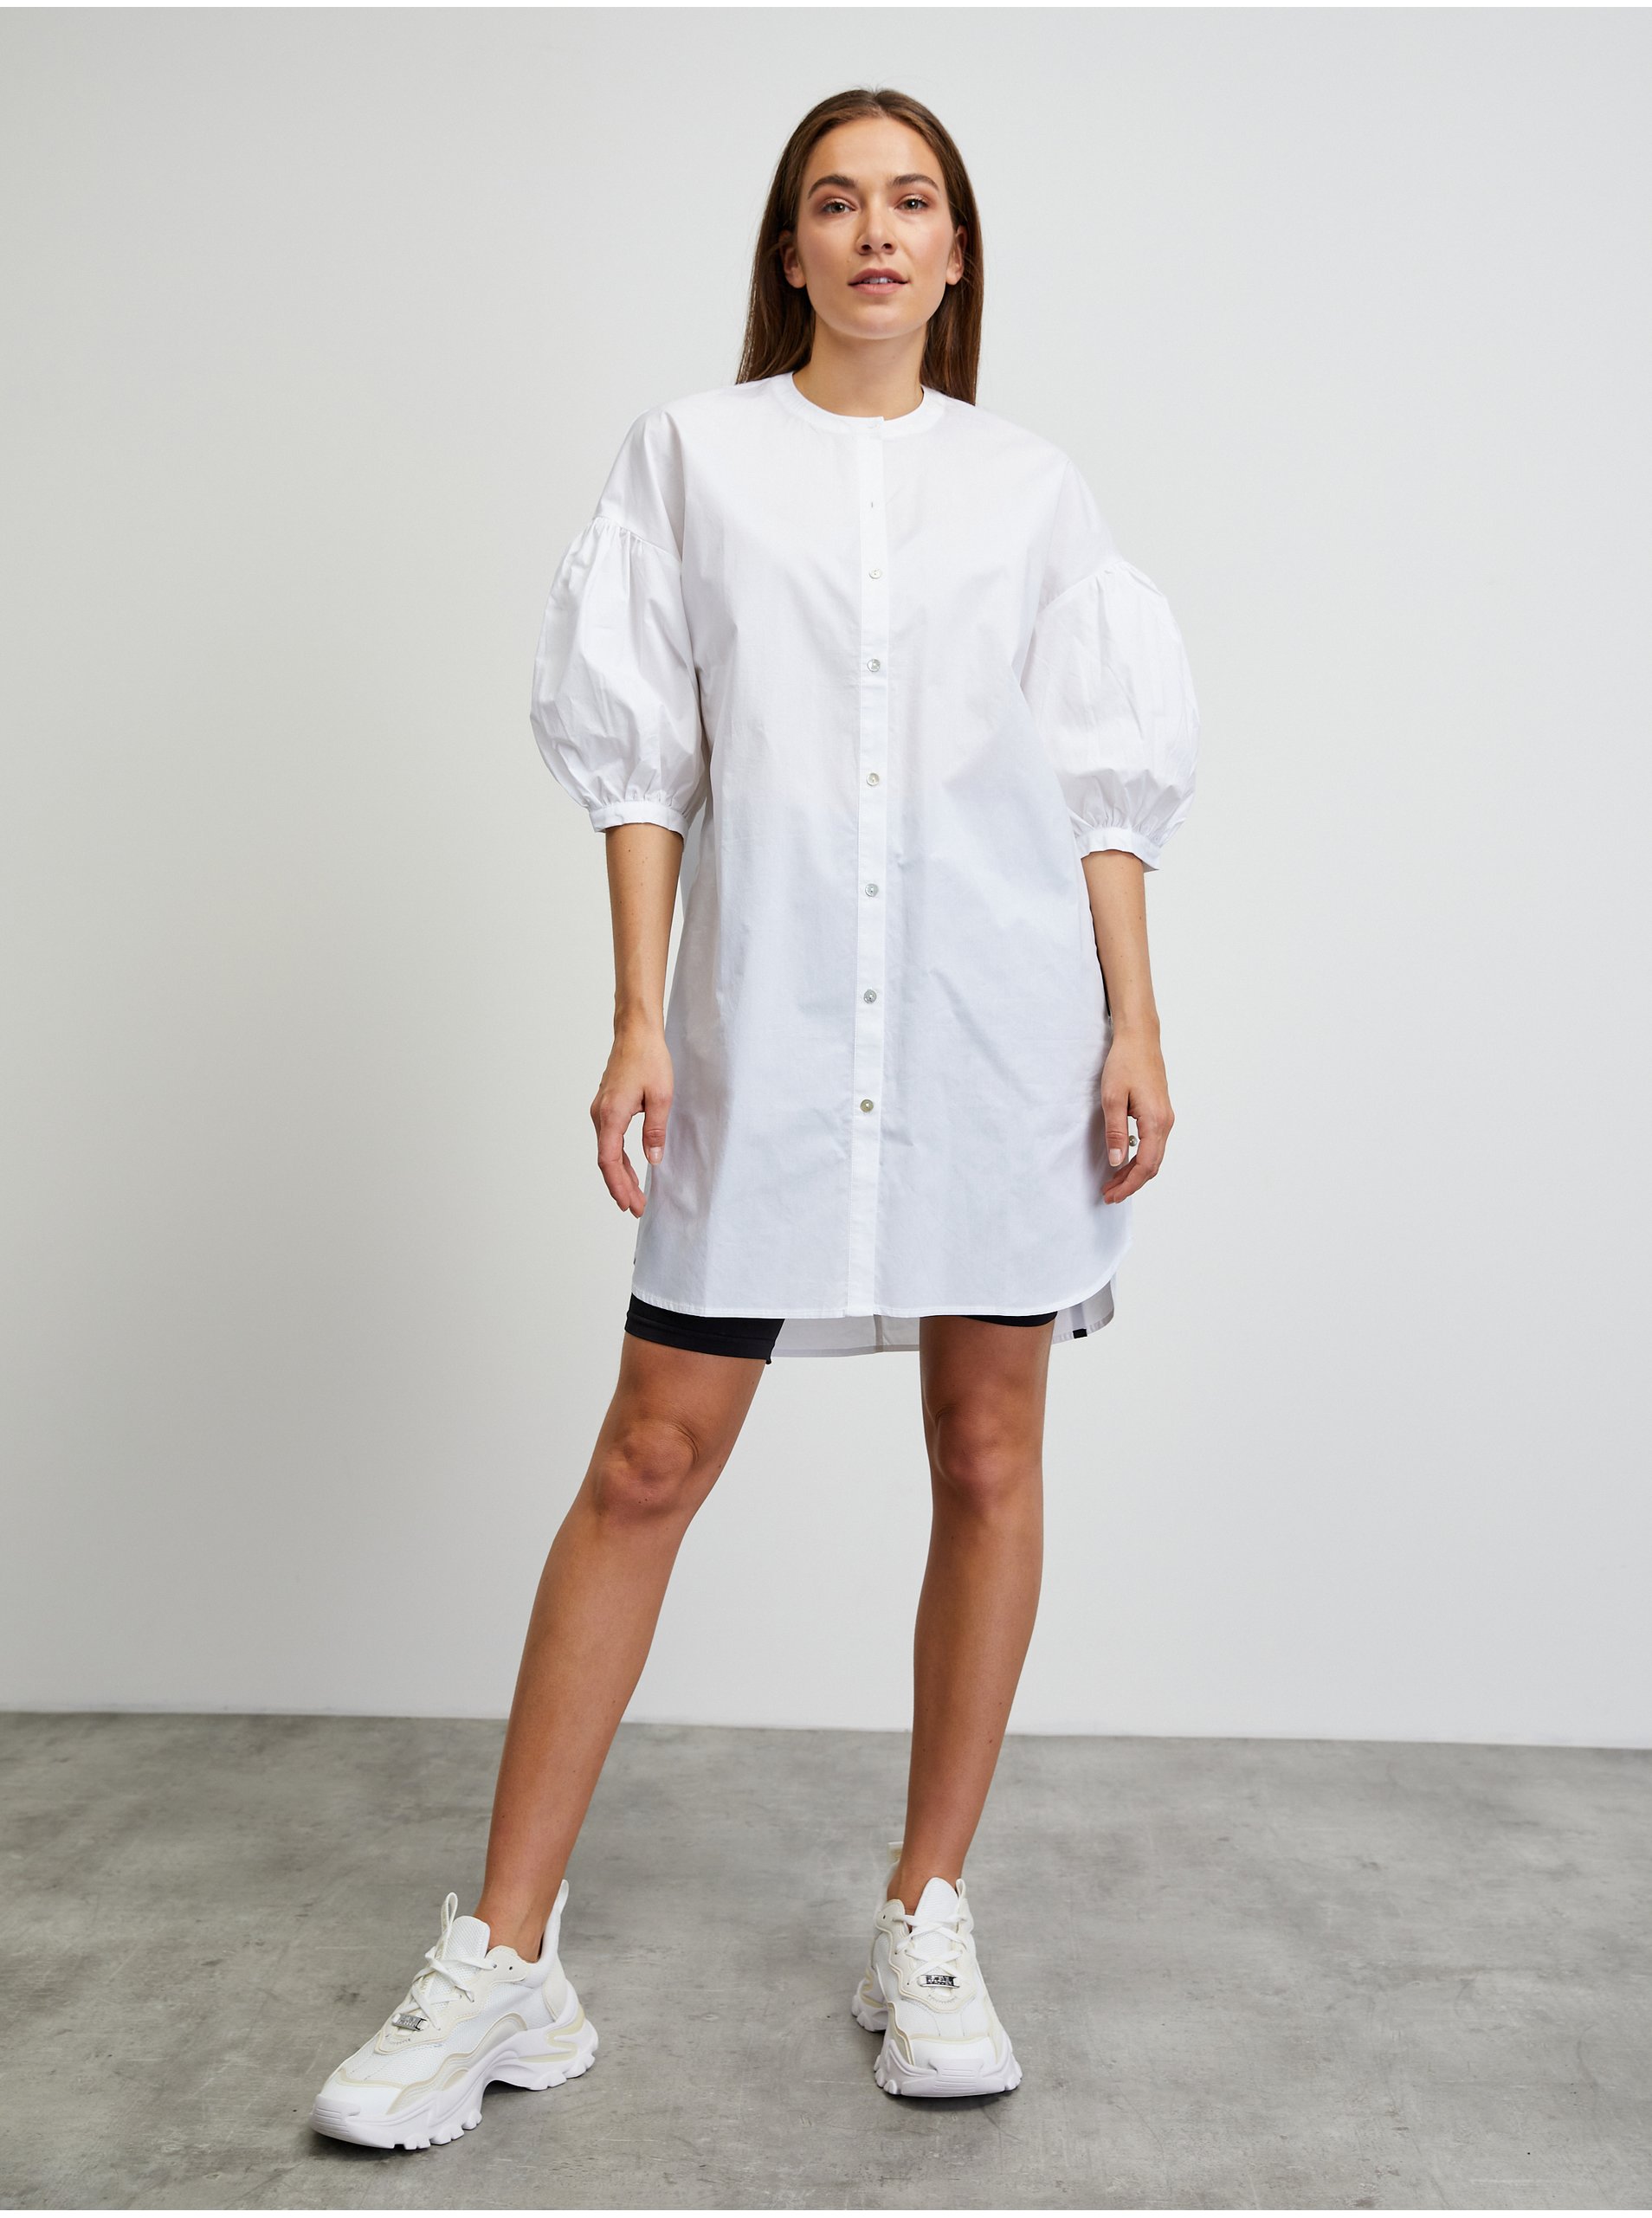 E-shop Bílá prodloužená košile METROOPOLIS by ZOOT.lab Nala